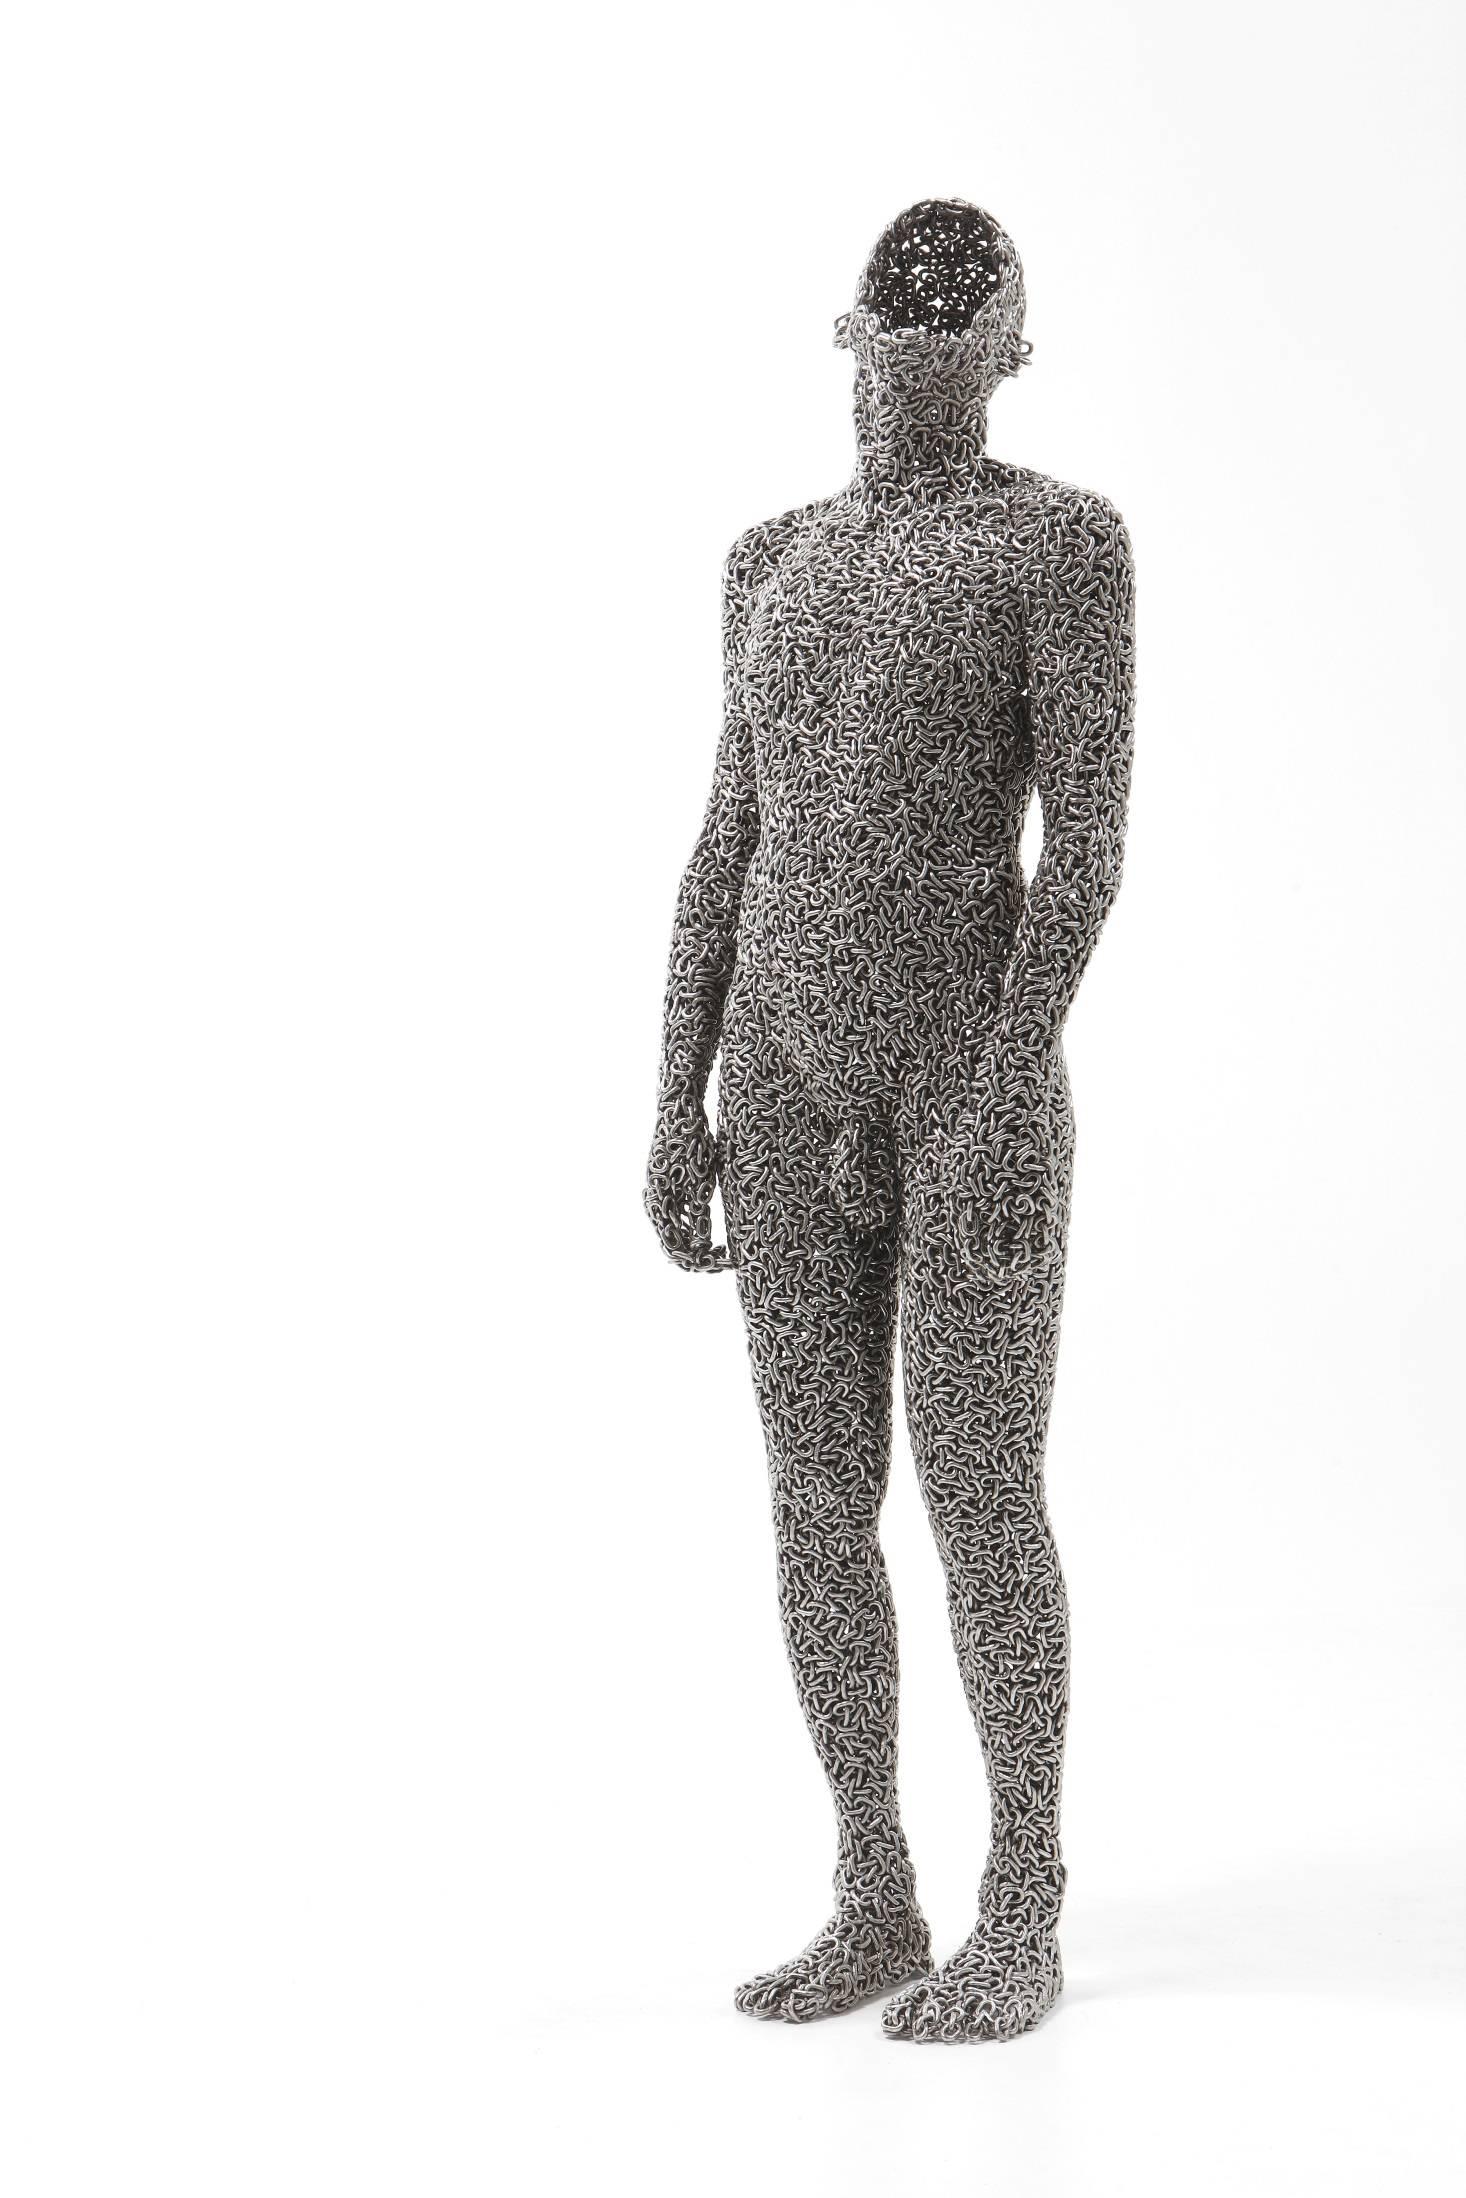 Seo Young Deok Nude Sculpture - Anguish 16